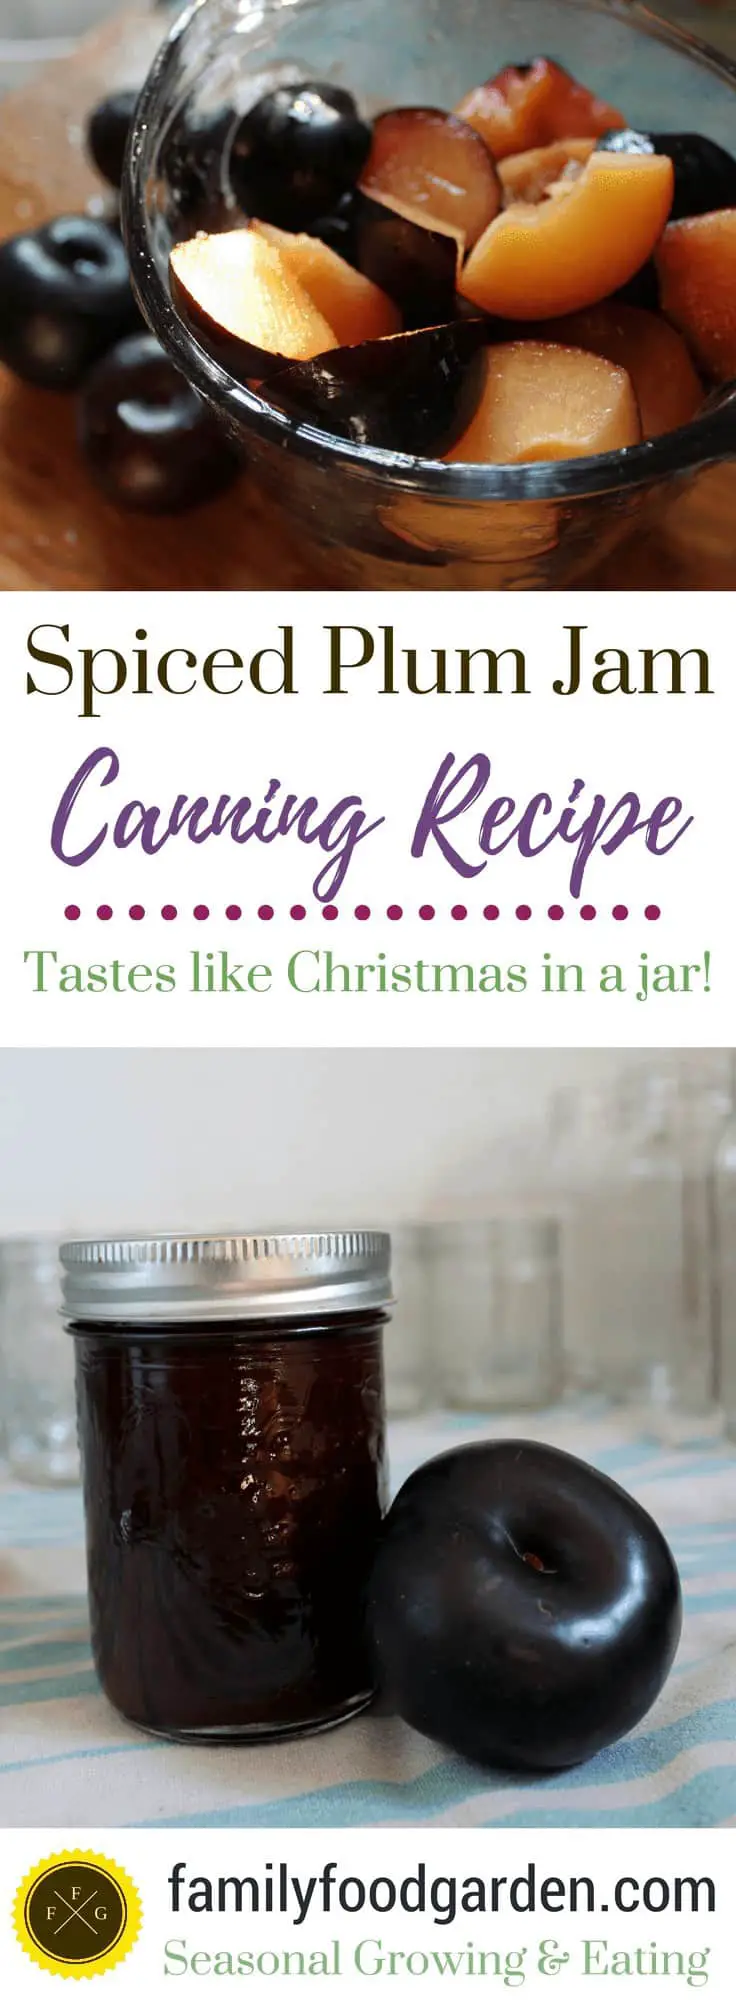 spiced plum jam